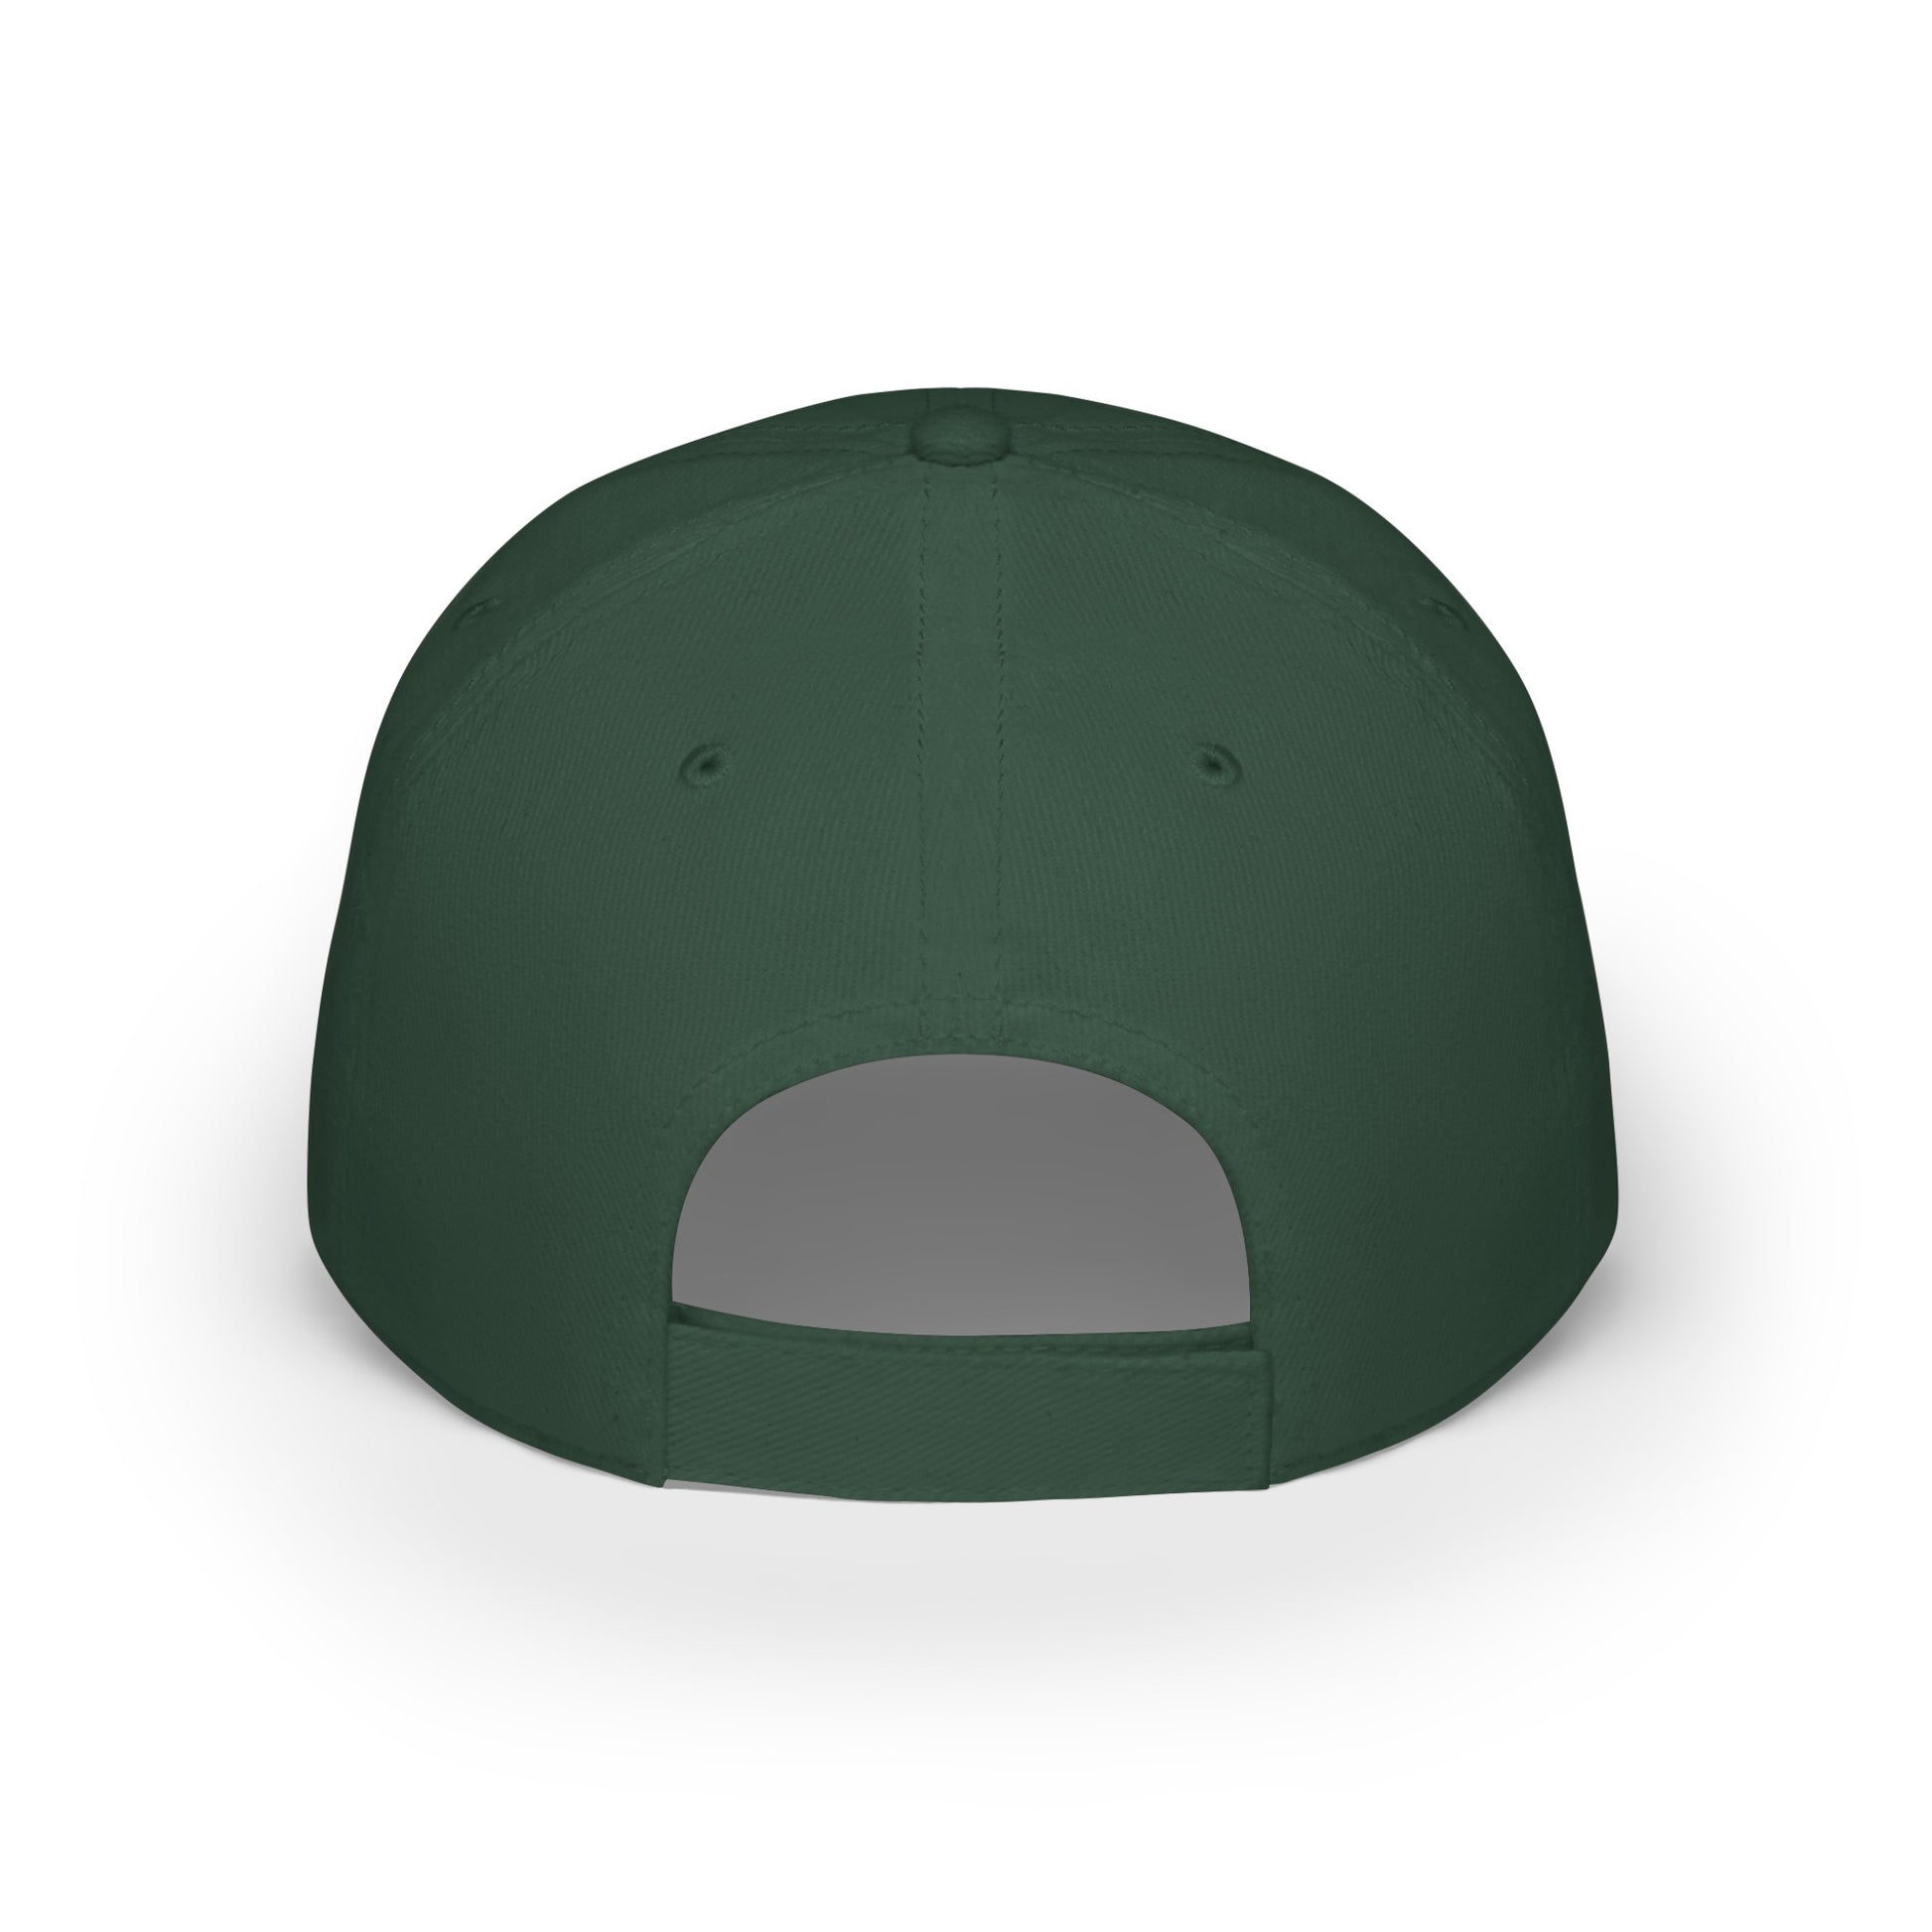 MDBTDJ#WBGC - Low Profile Baseball Cap Tattooed Dj's Limited Edition, Hats, Tattooed Djs Shop